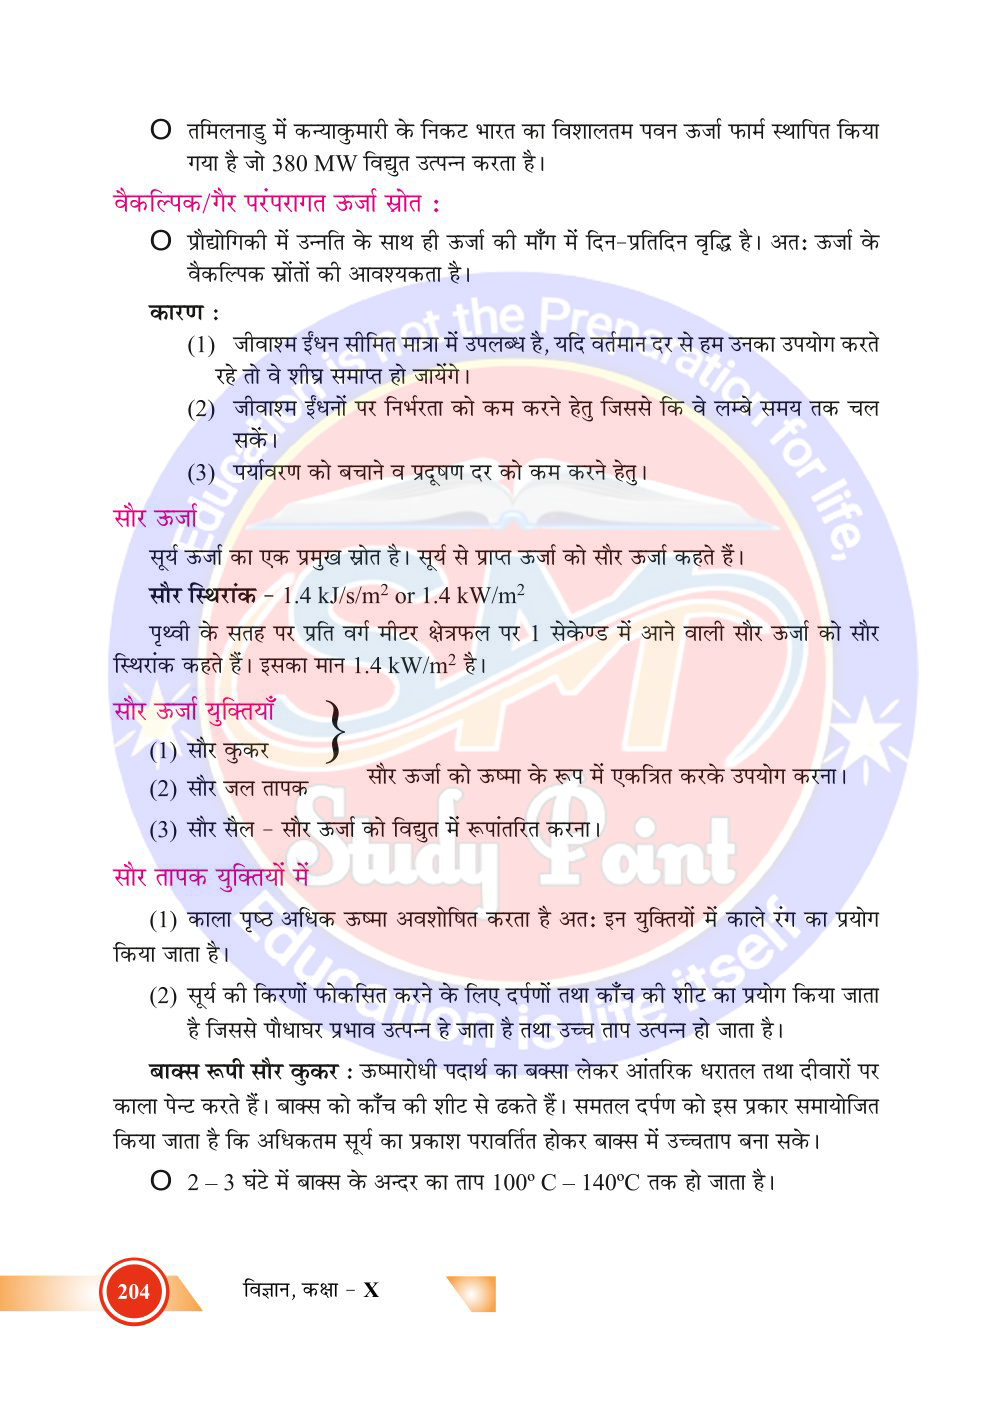 Bihar Board Class 10th Physics  Sources of Energy  Class 10 Physics Rivision Notes PDF  ऊर्जा के स्रोत  बिहार बोर्ड क्लास 10वीं भौतिकी नोट्स  कक्षा 10 भौतिकी हिंदी में नोट्स